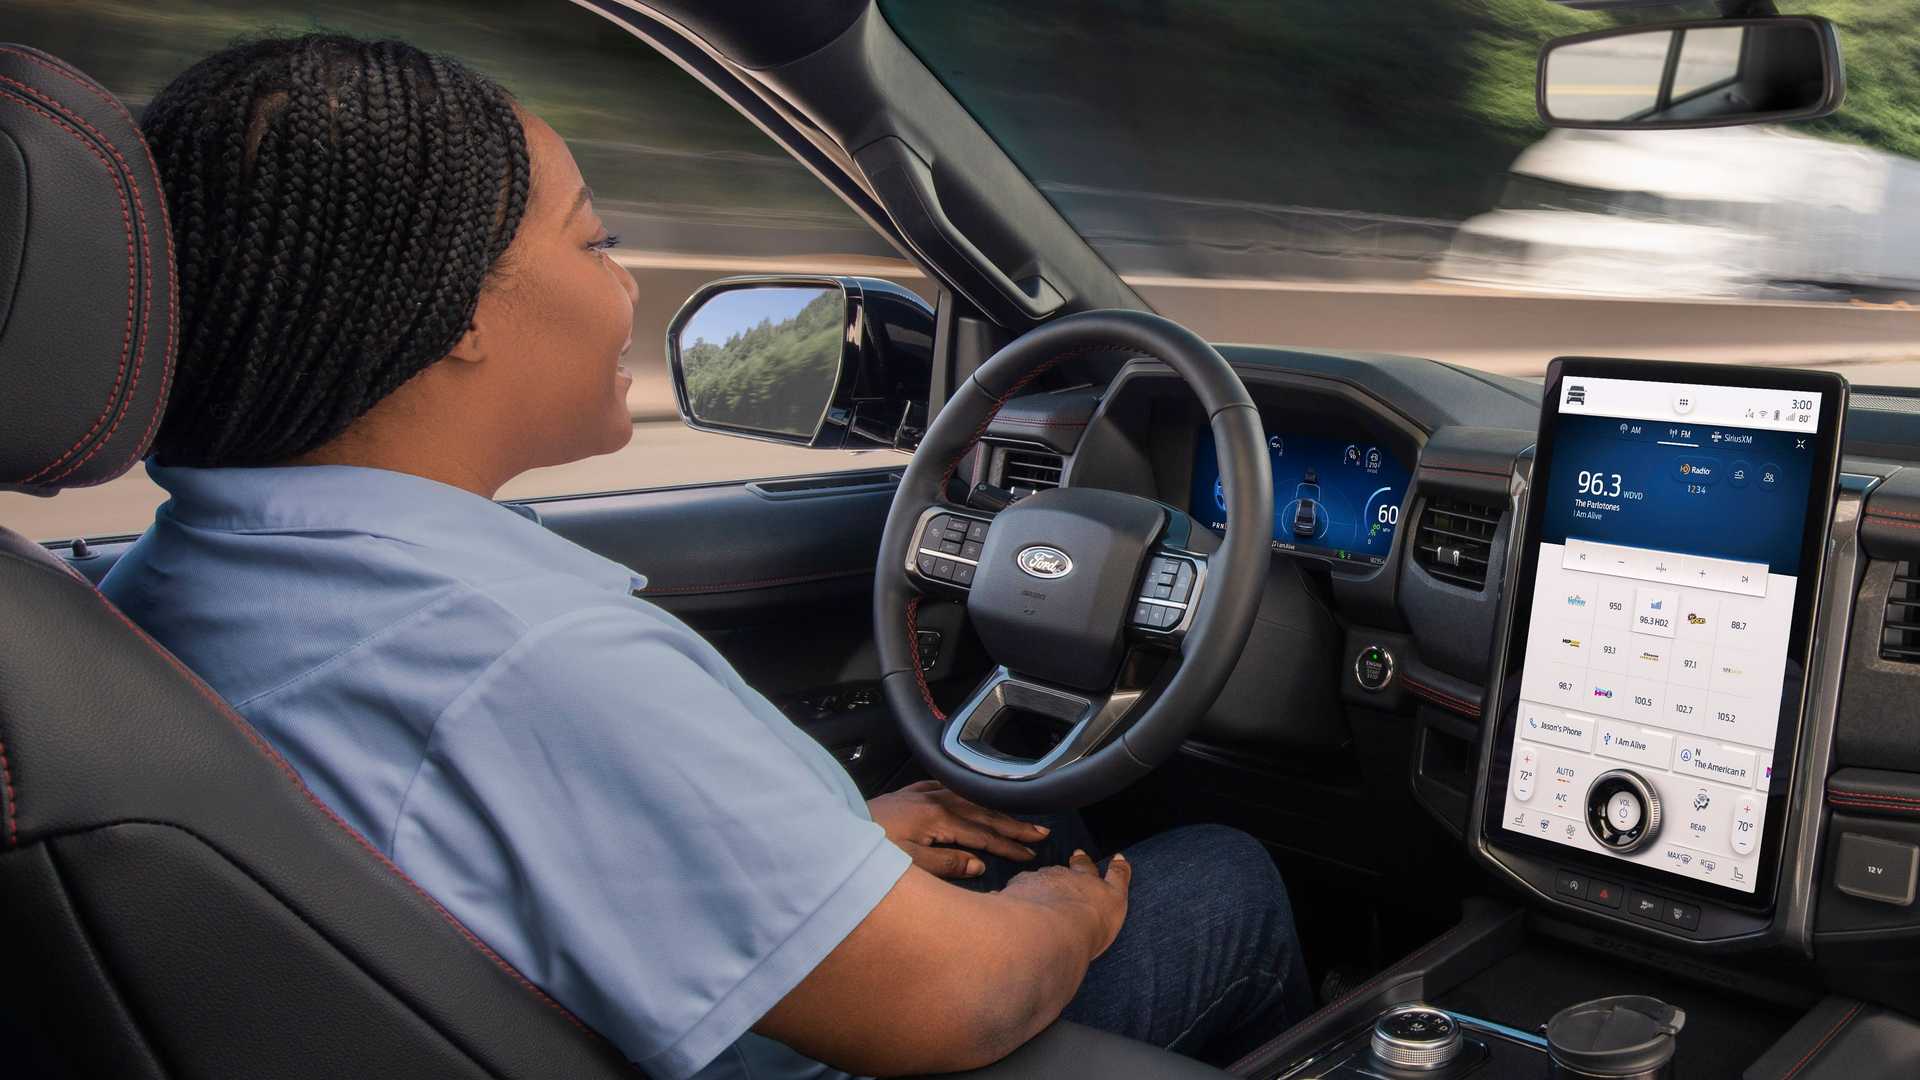 Ford oppretter Latitude AI-datterselskap for å utvikle avansert førerassistentteknologi